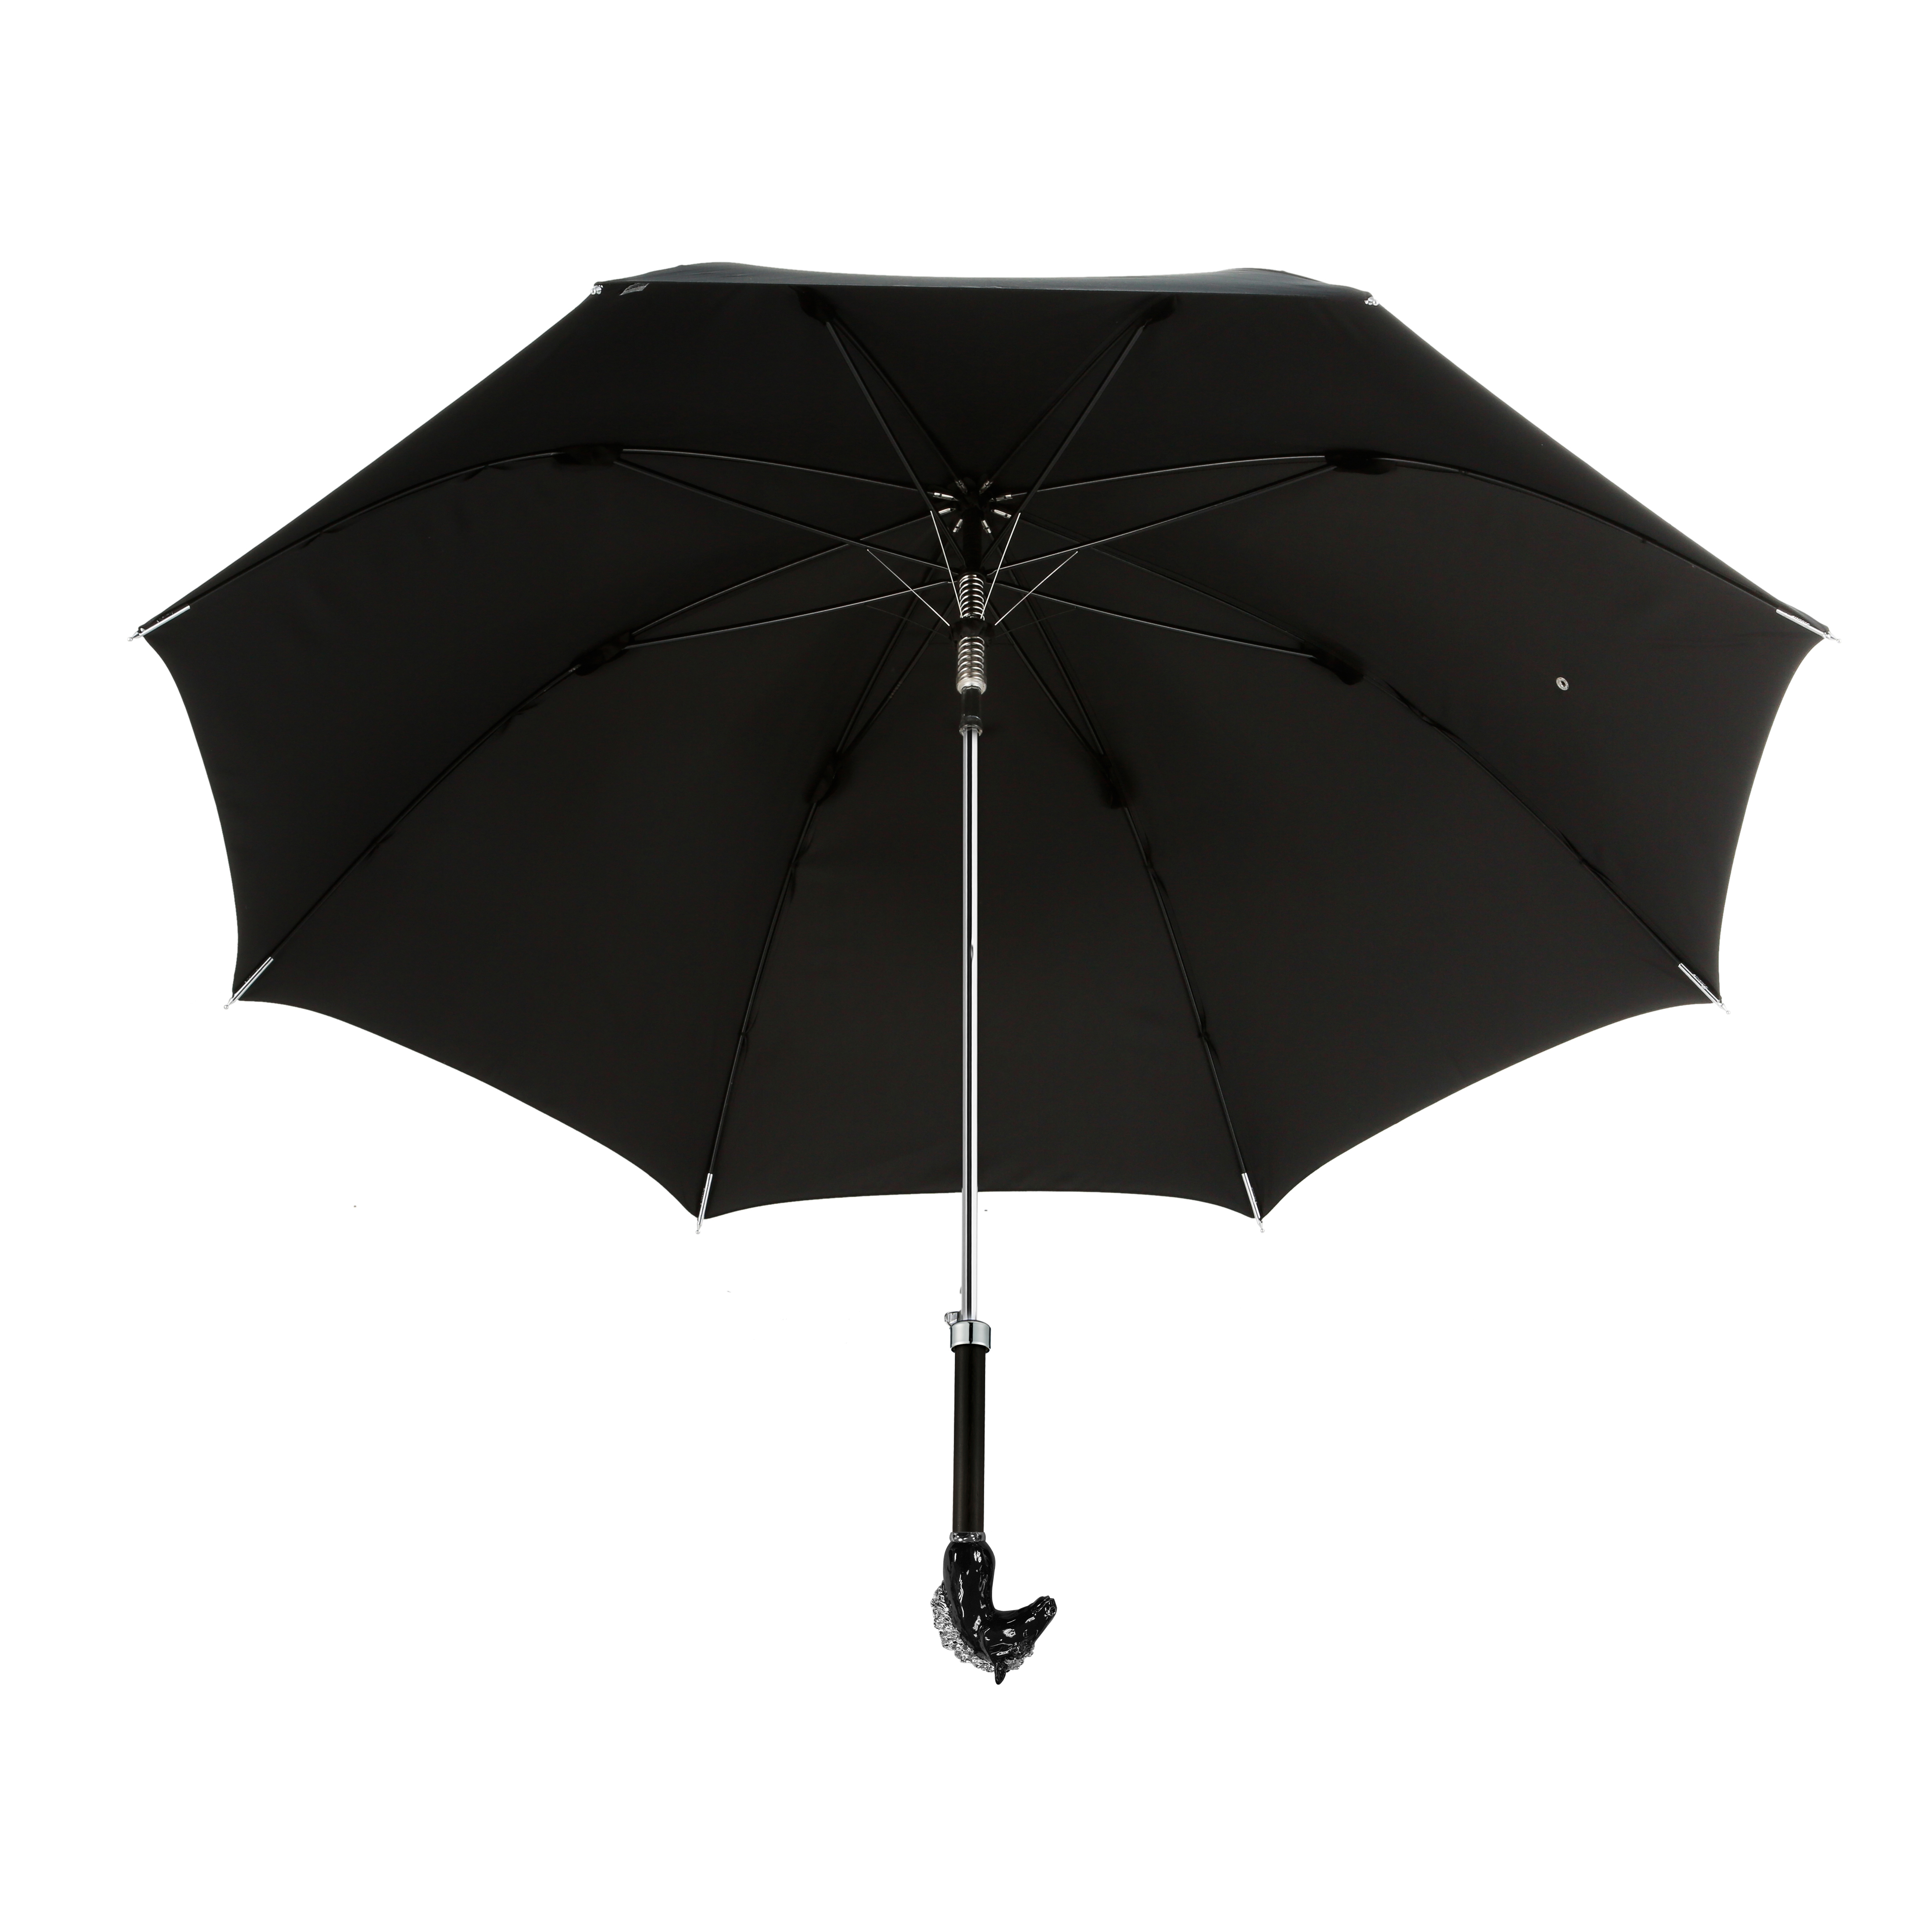 Black mane horse straight umbrella